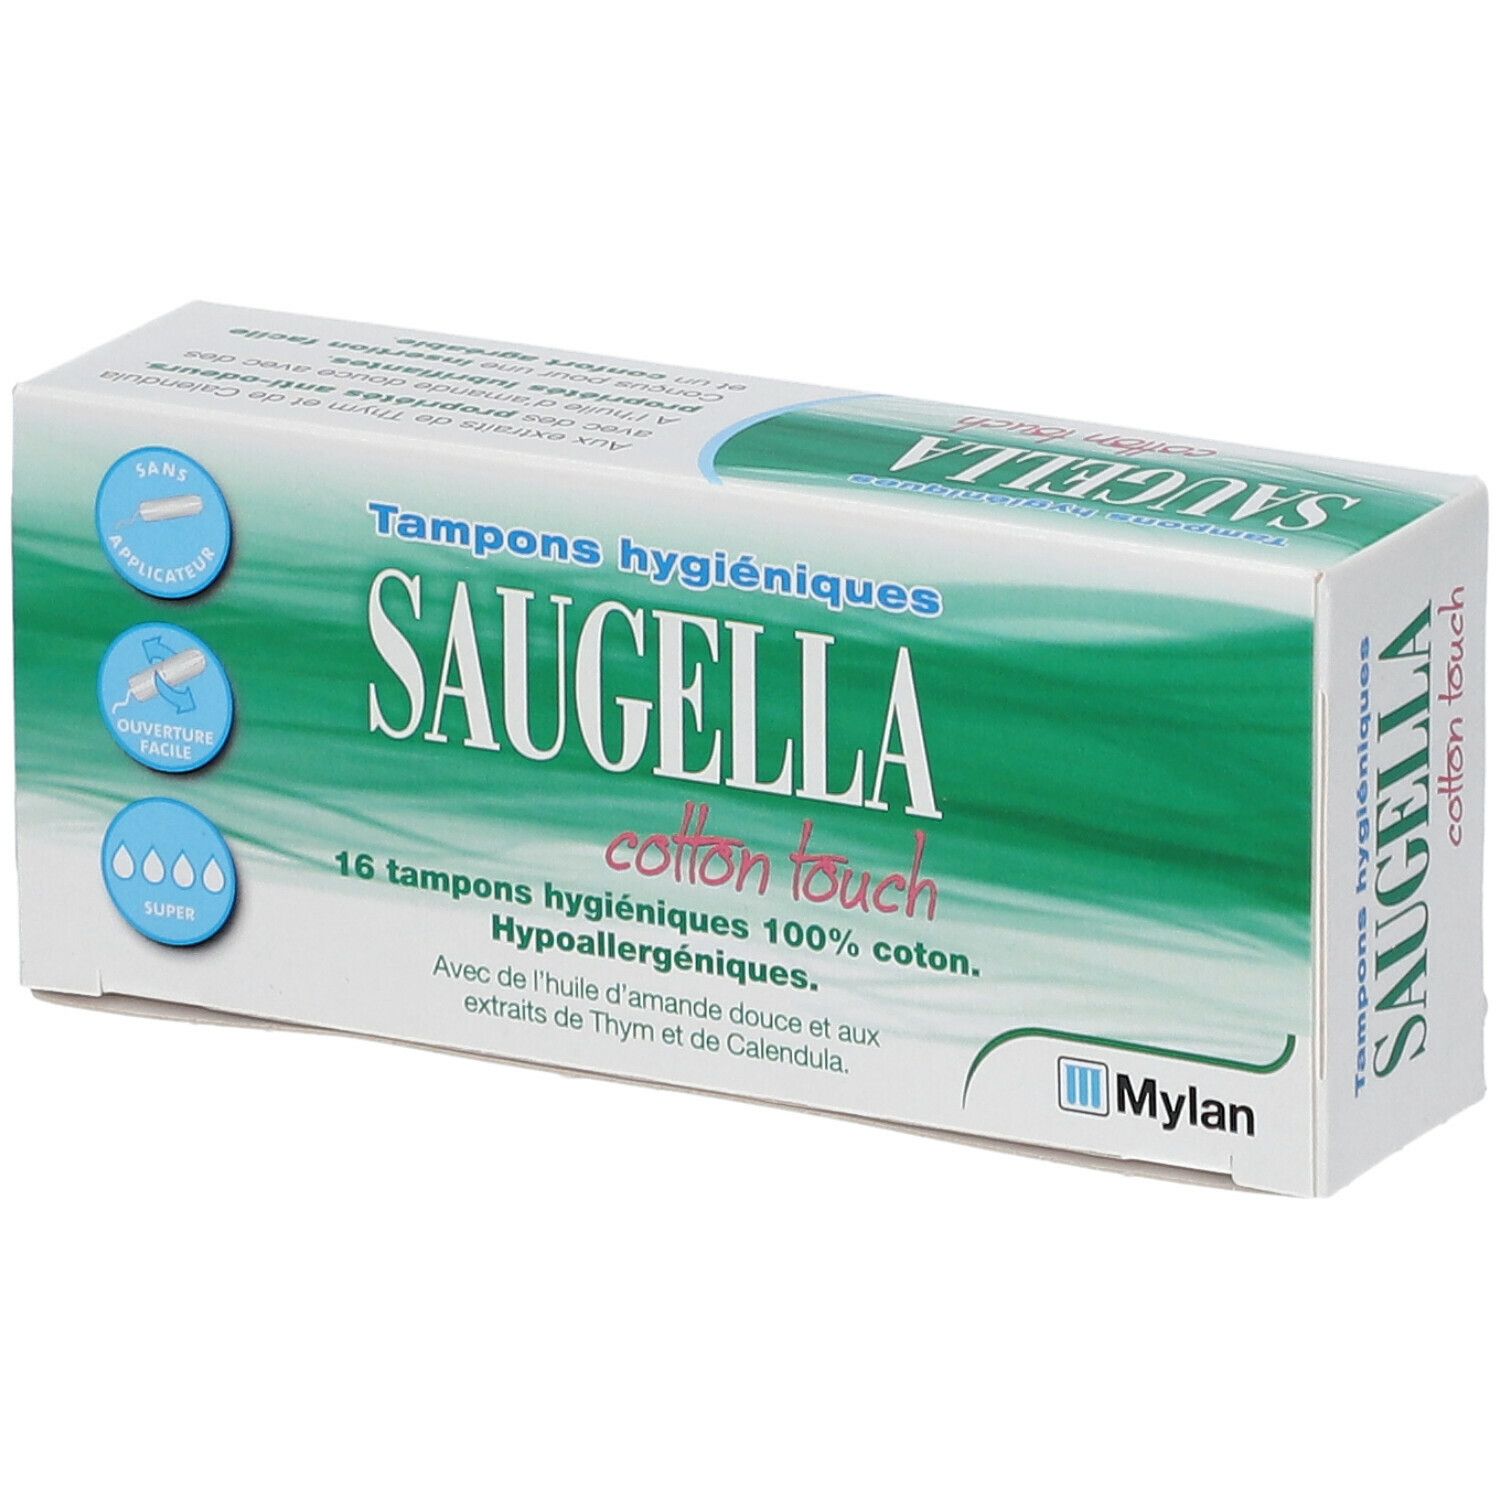 Saugella cotton touch Tampons hygiéniques Super